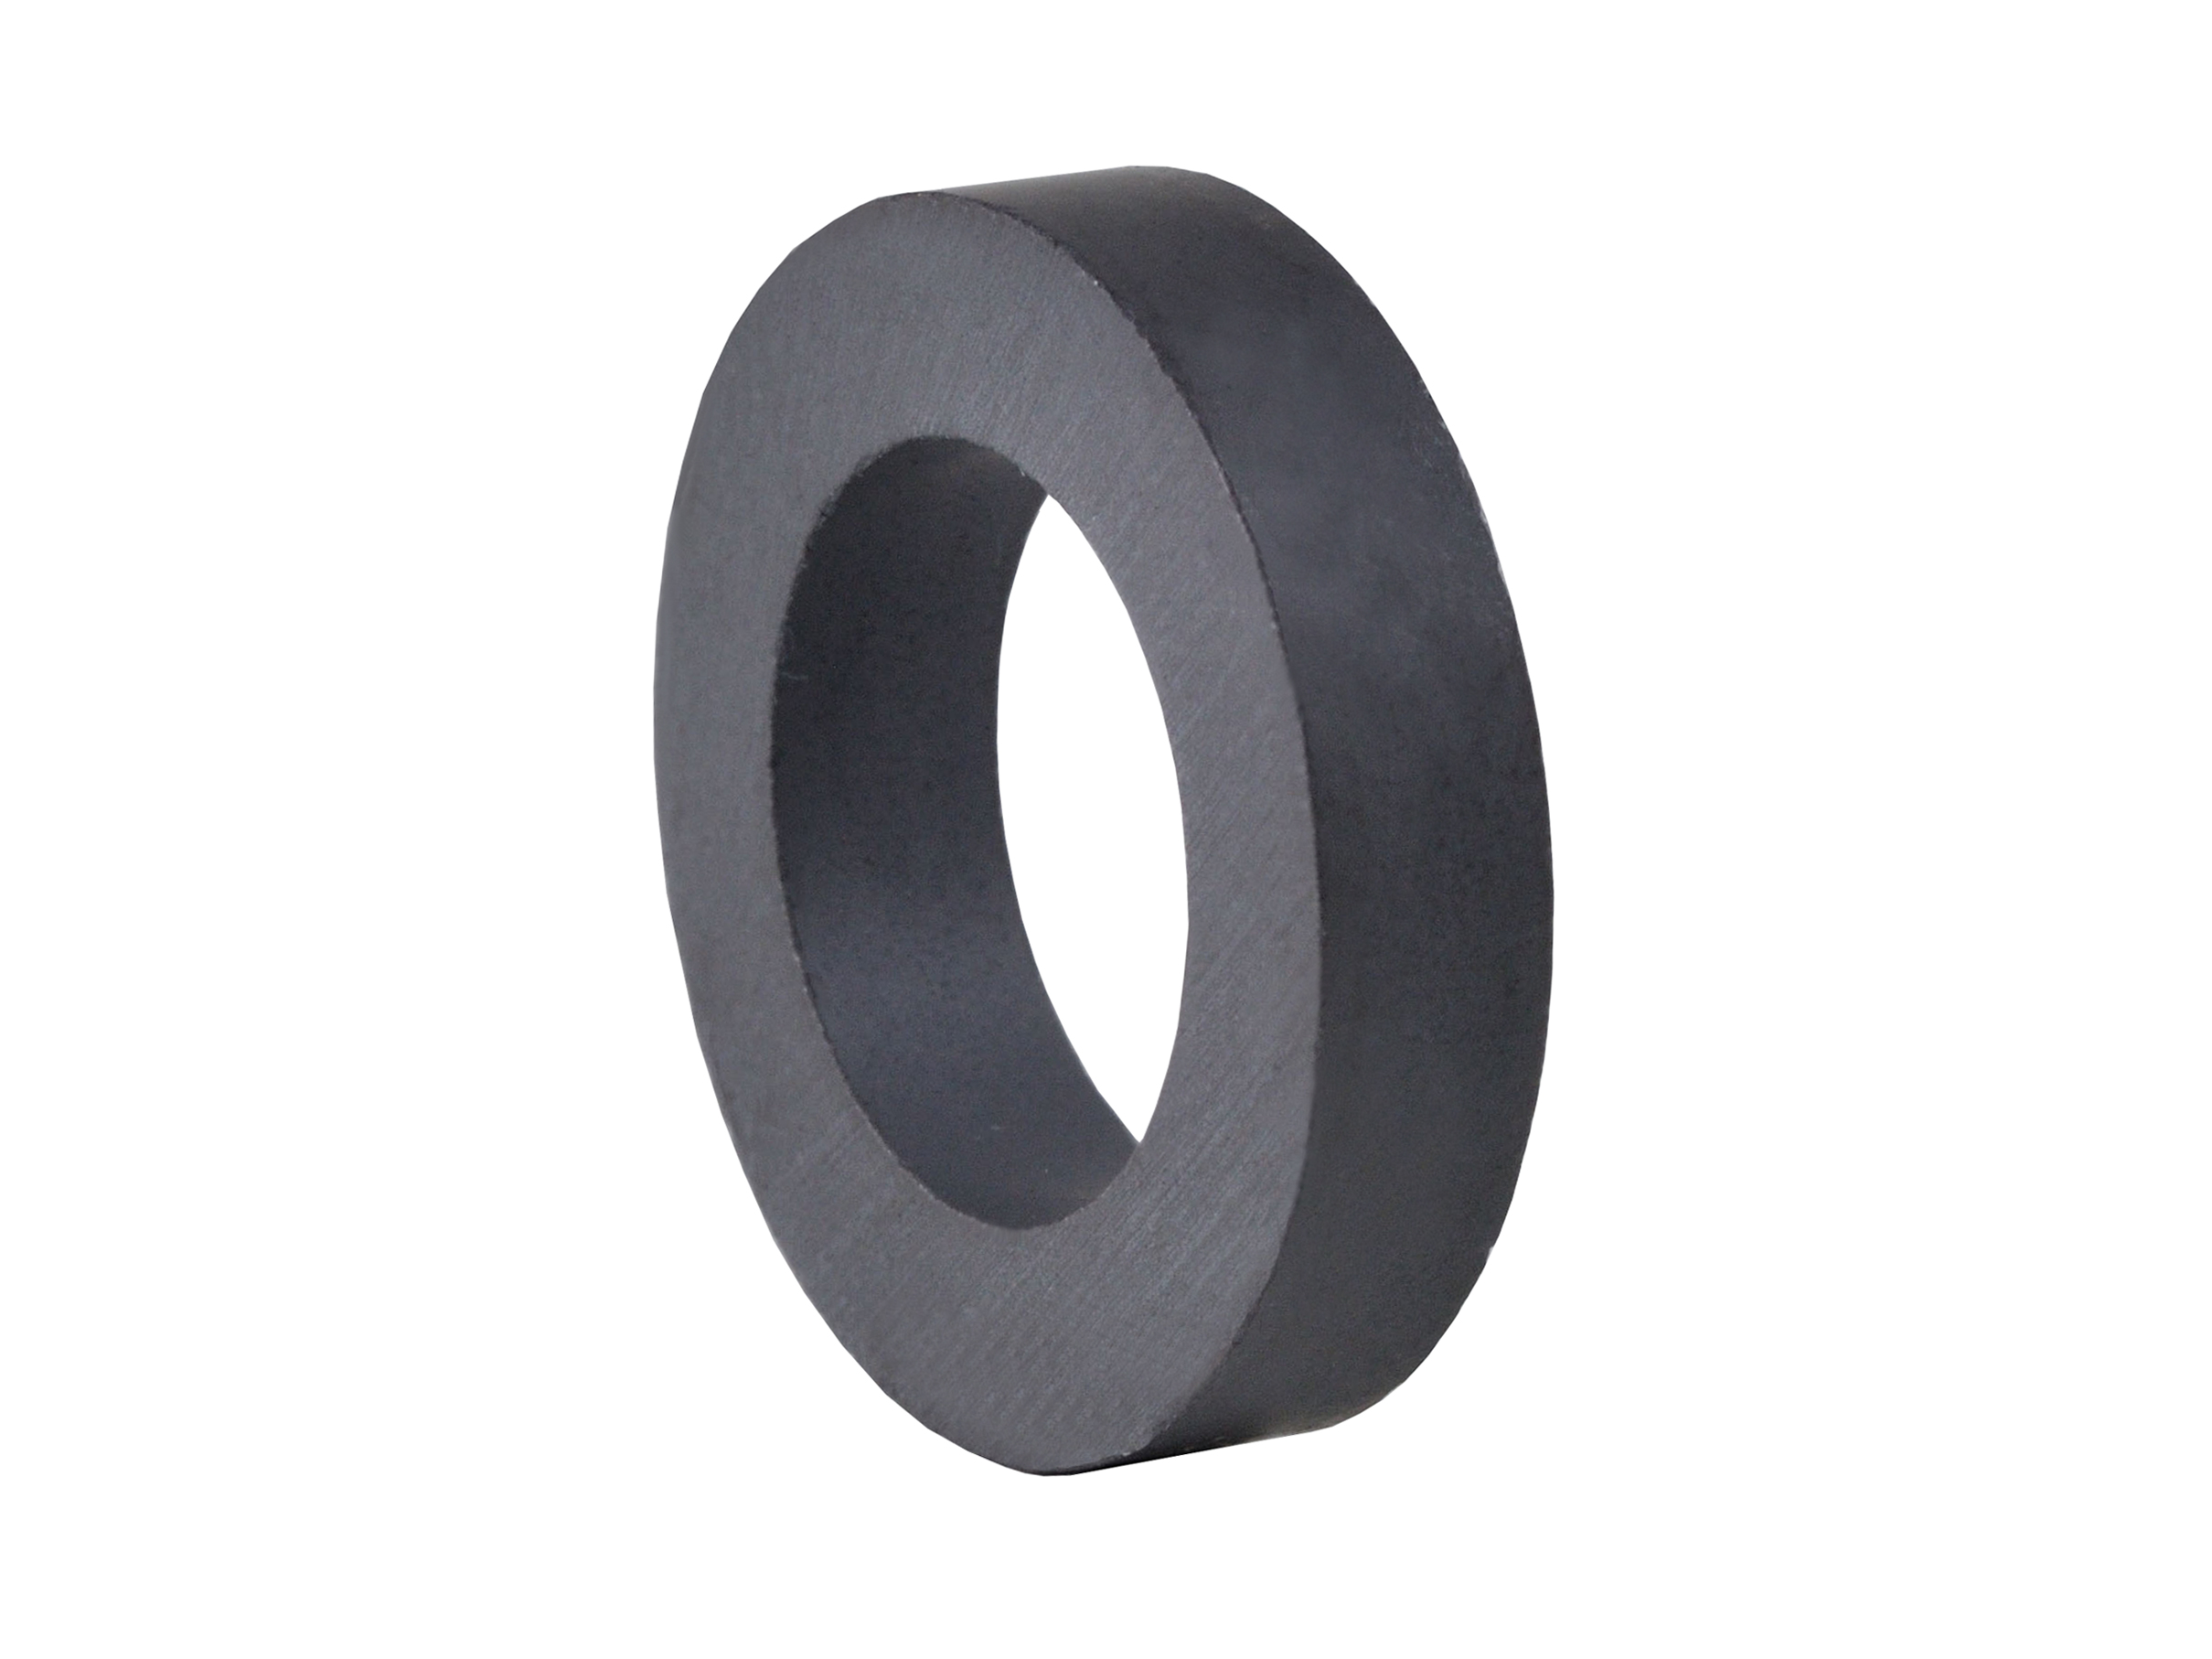 Ring‑Shaped Ferrite Magnet (FRR19) 